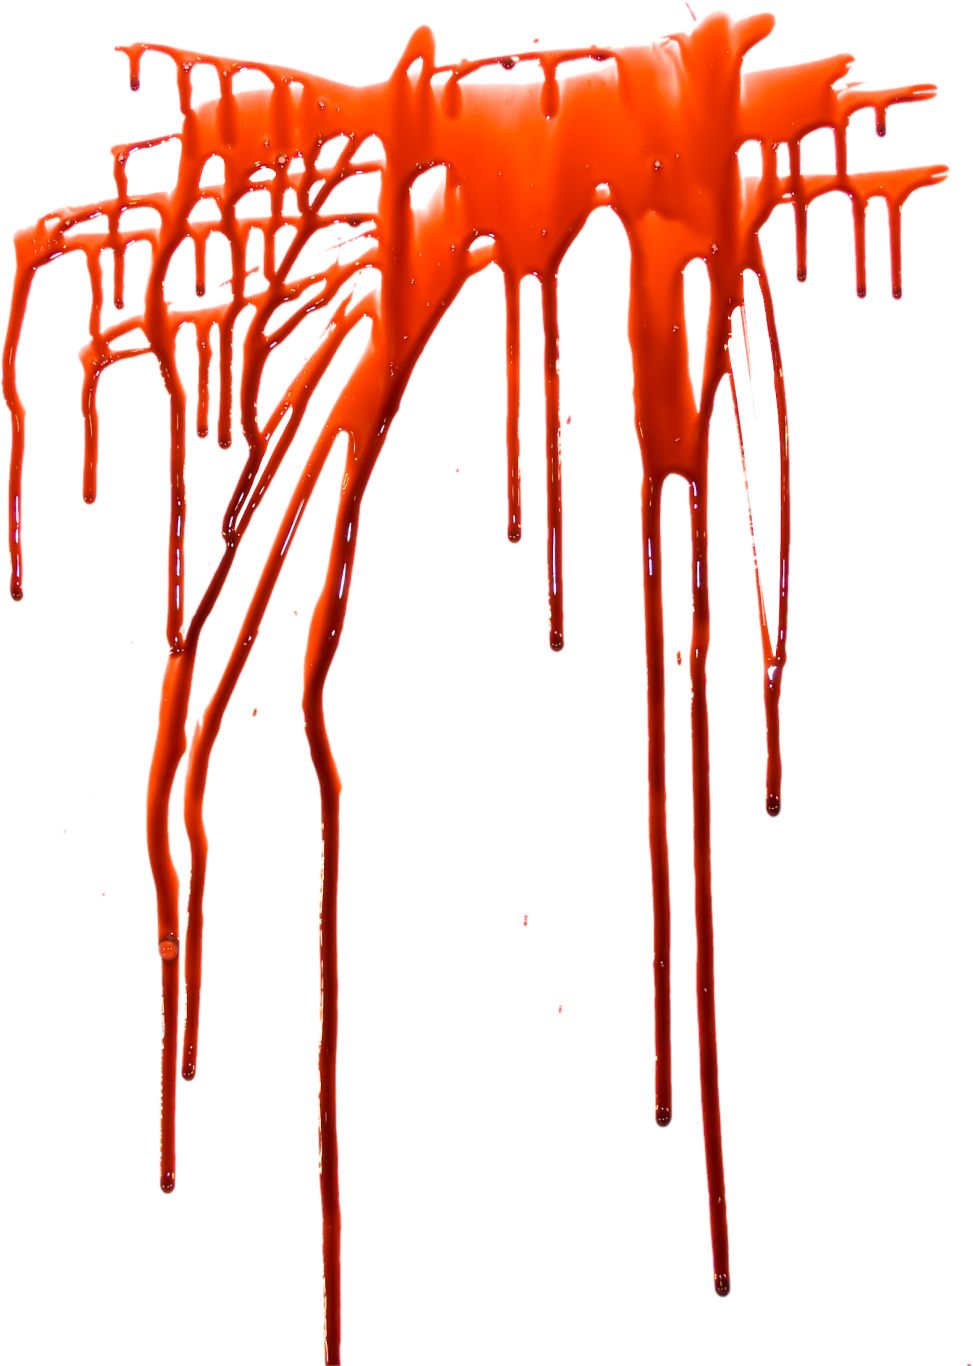 Blood splashes PNG image    图片编号:6152